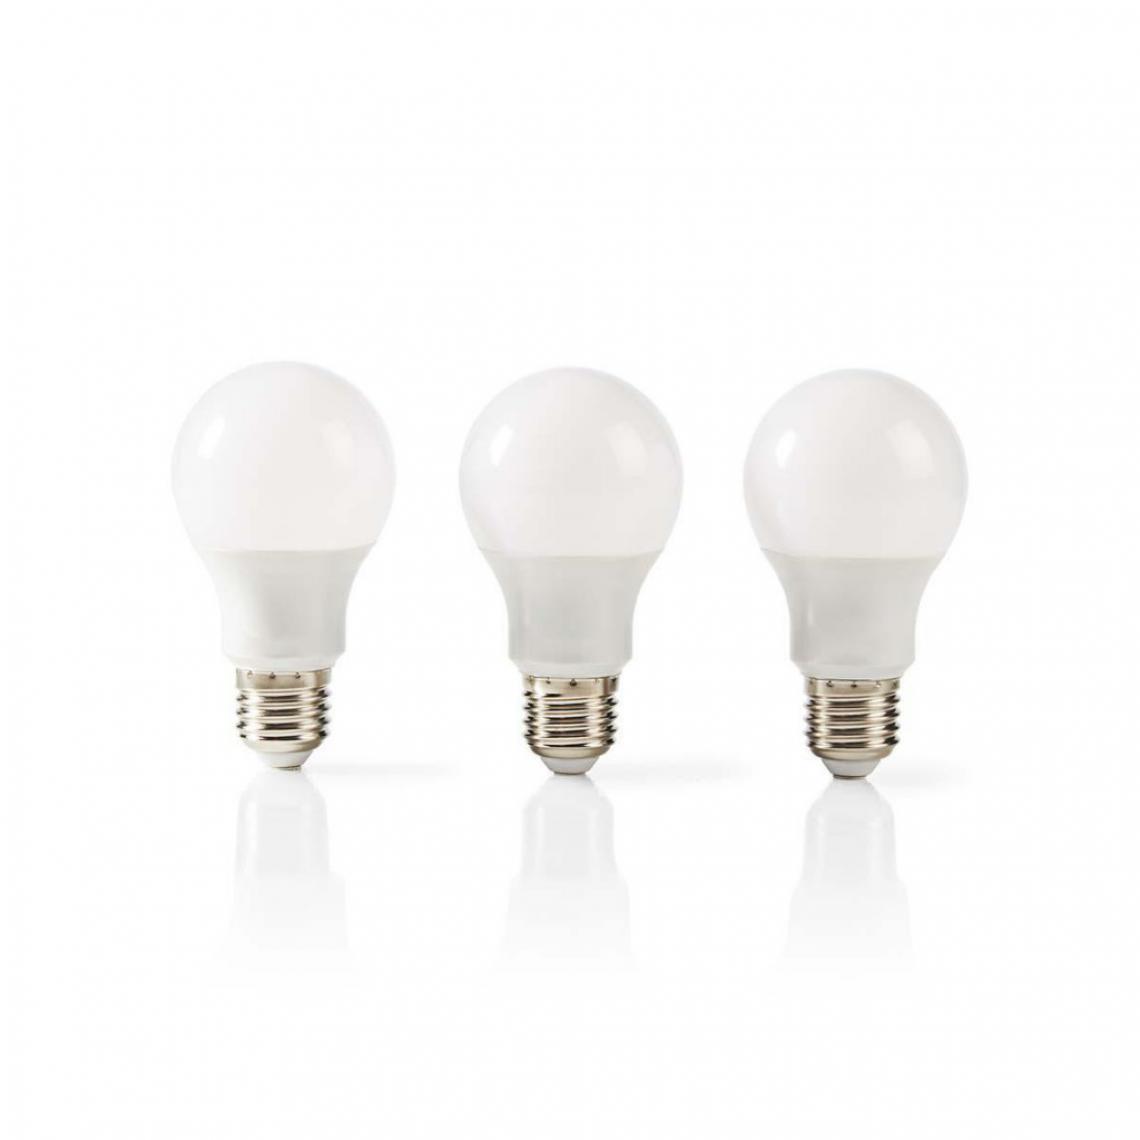 Alpexe - Lampe LED E27 | A60 | 5.7 W | 470 lm | Lot de 3 - Ampoules LED